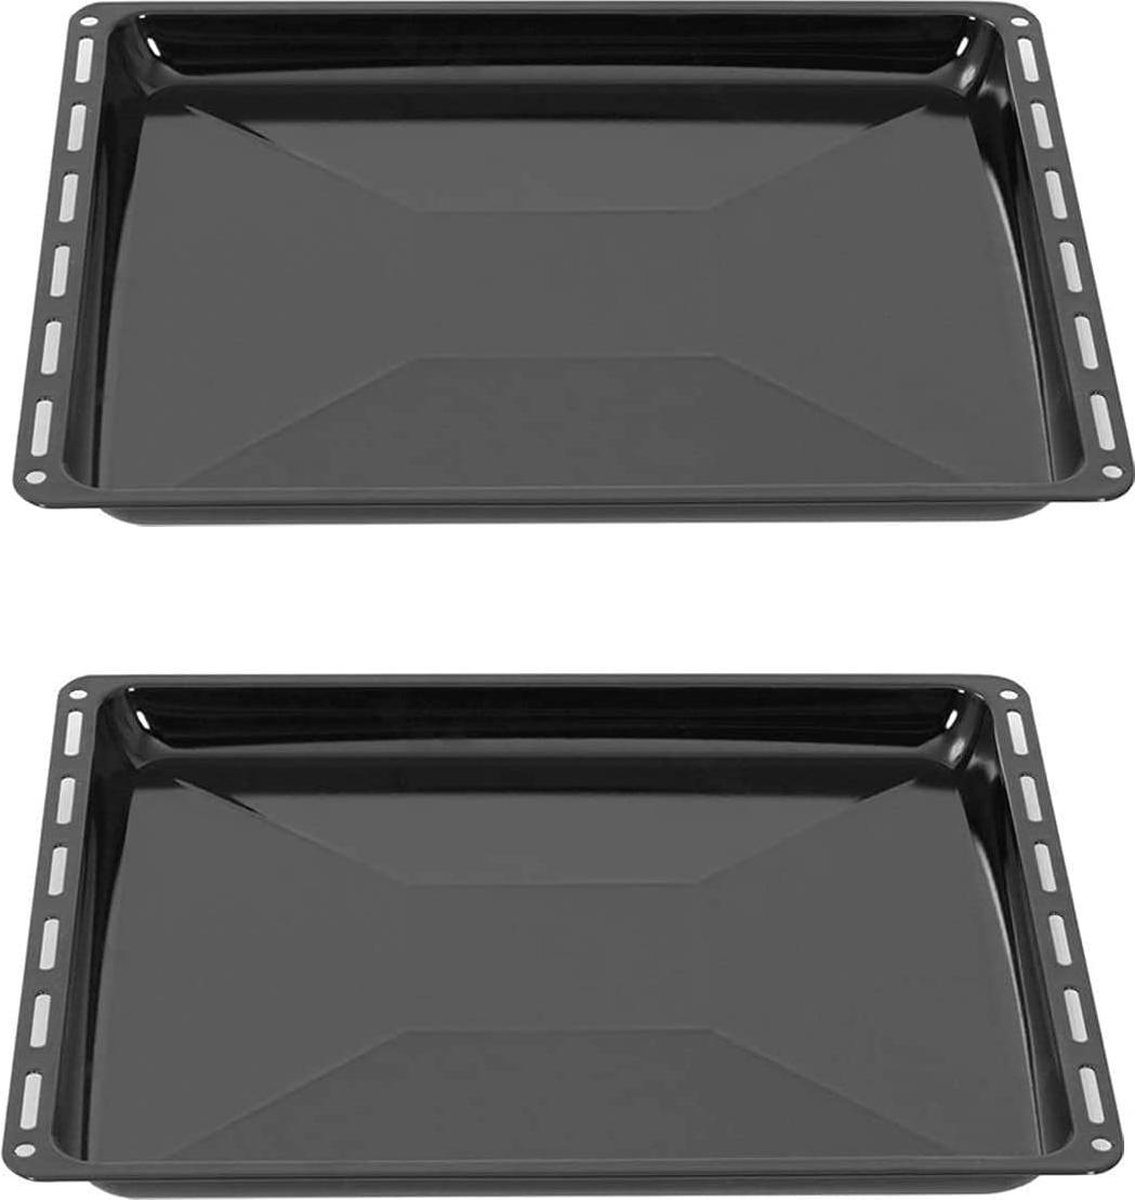 ICQN Oven Bakplaat Set - 2 stuks - 445 x 375 x 25 mm - Geëmailleerd